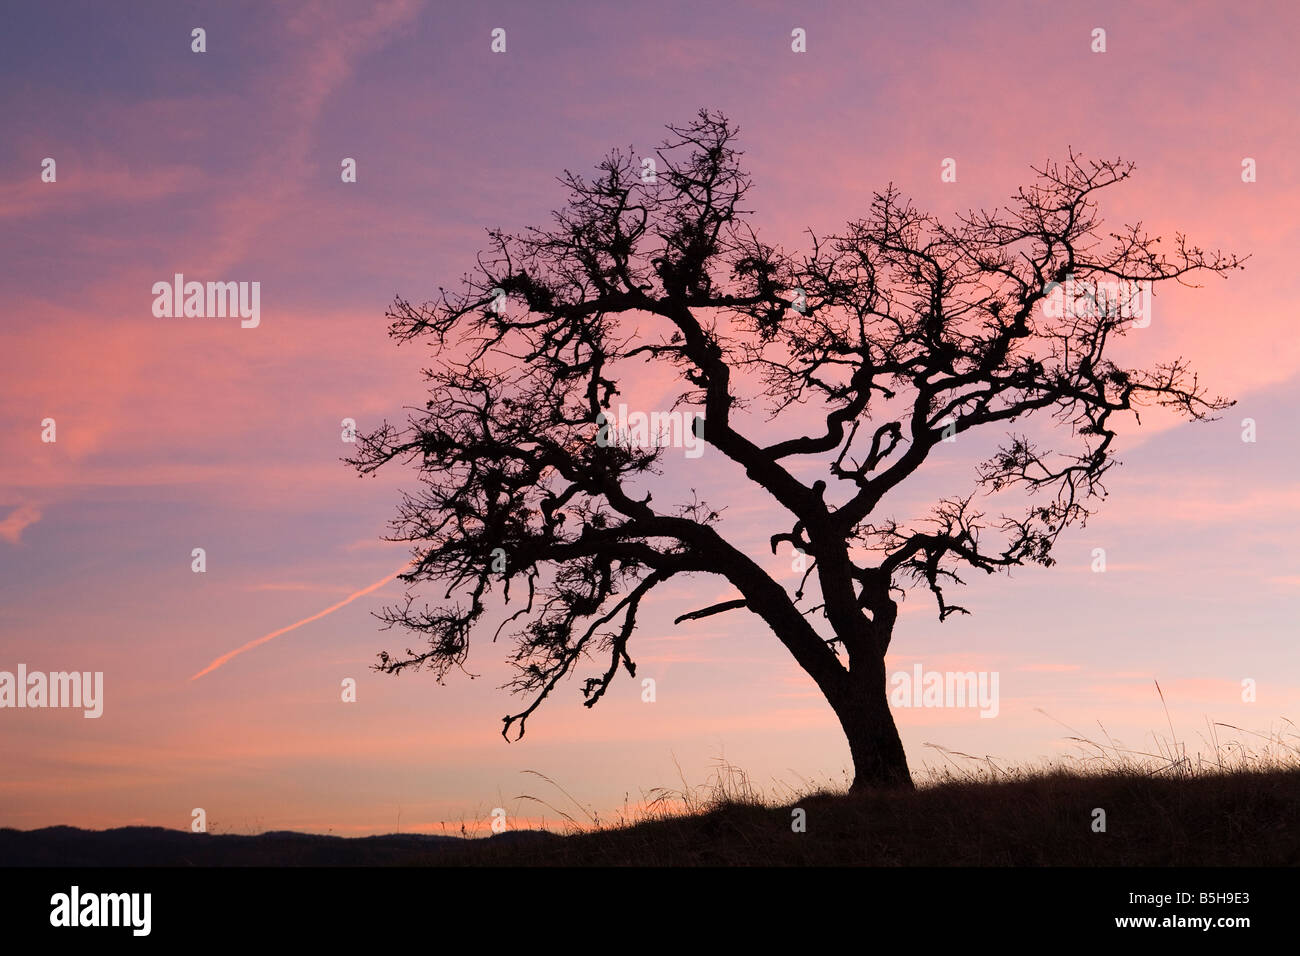 Chêne, coucher de soleil, WA, Washington, Columbia River Gorge, rose, arbre, silhouette, printemps, horizontal, con-sentiers, sky Banque D'Images